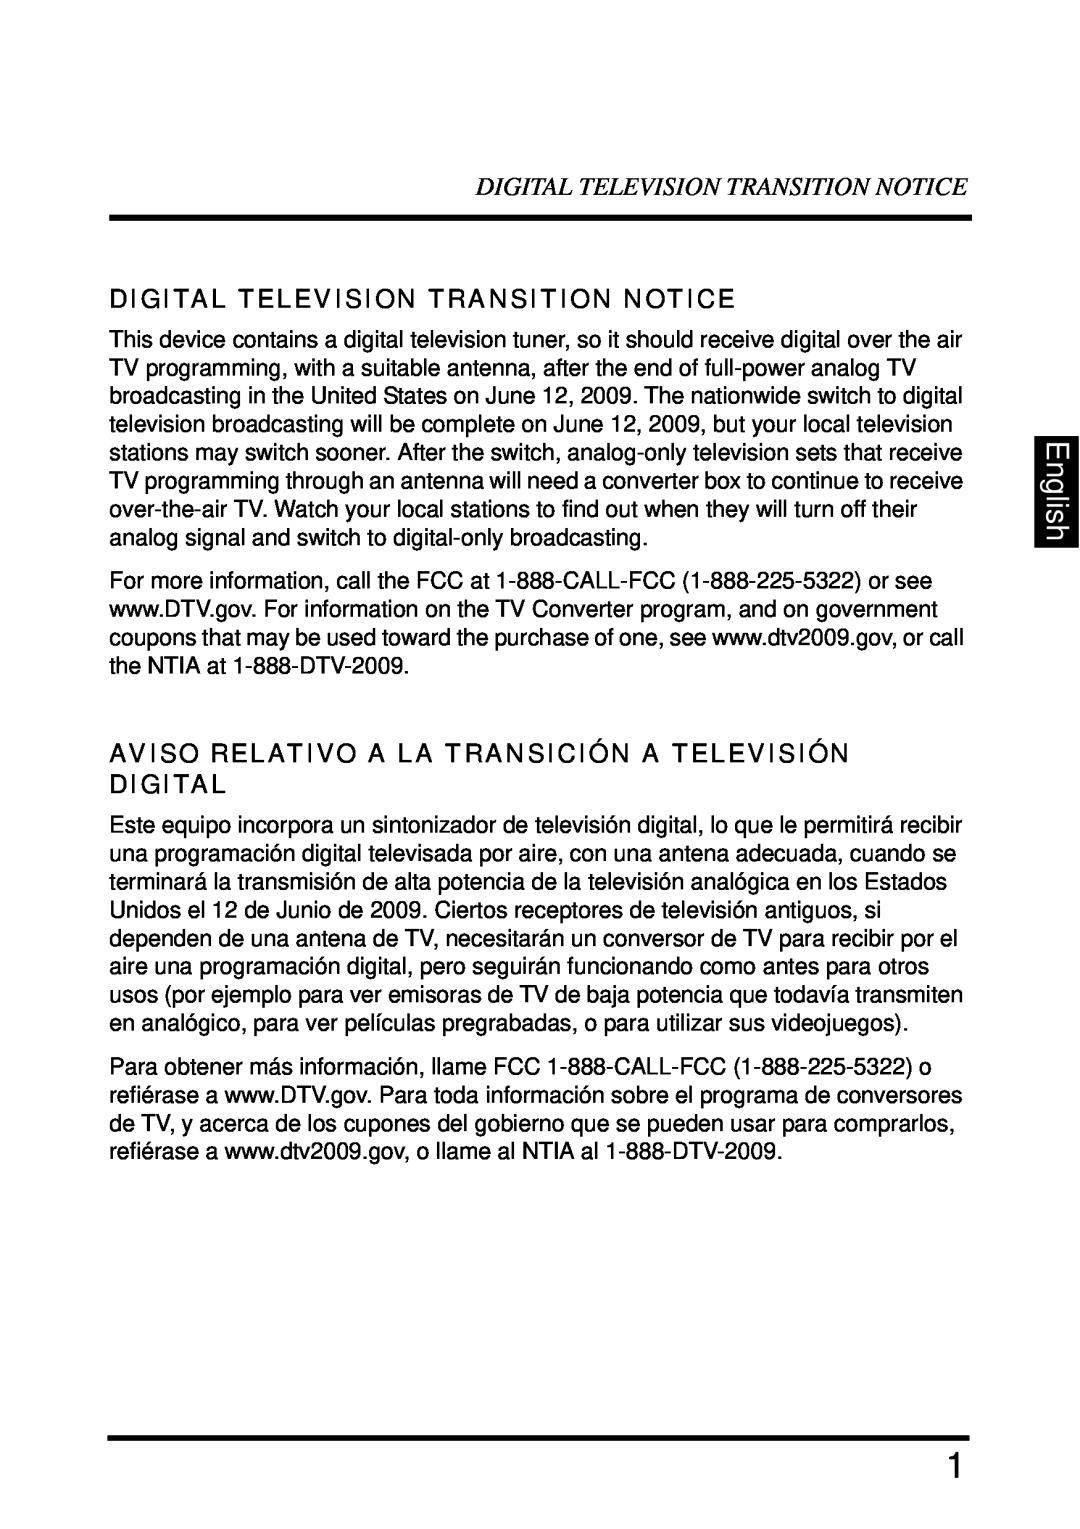 Westinghouse LD-4680 English, Digital Television Transition Notice, Aviso Relativo A La Transición A Televisión Digital 